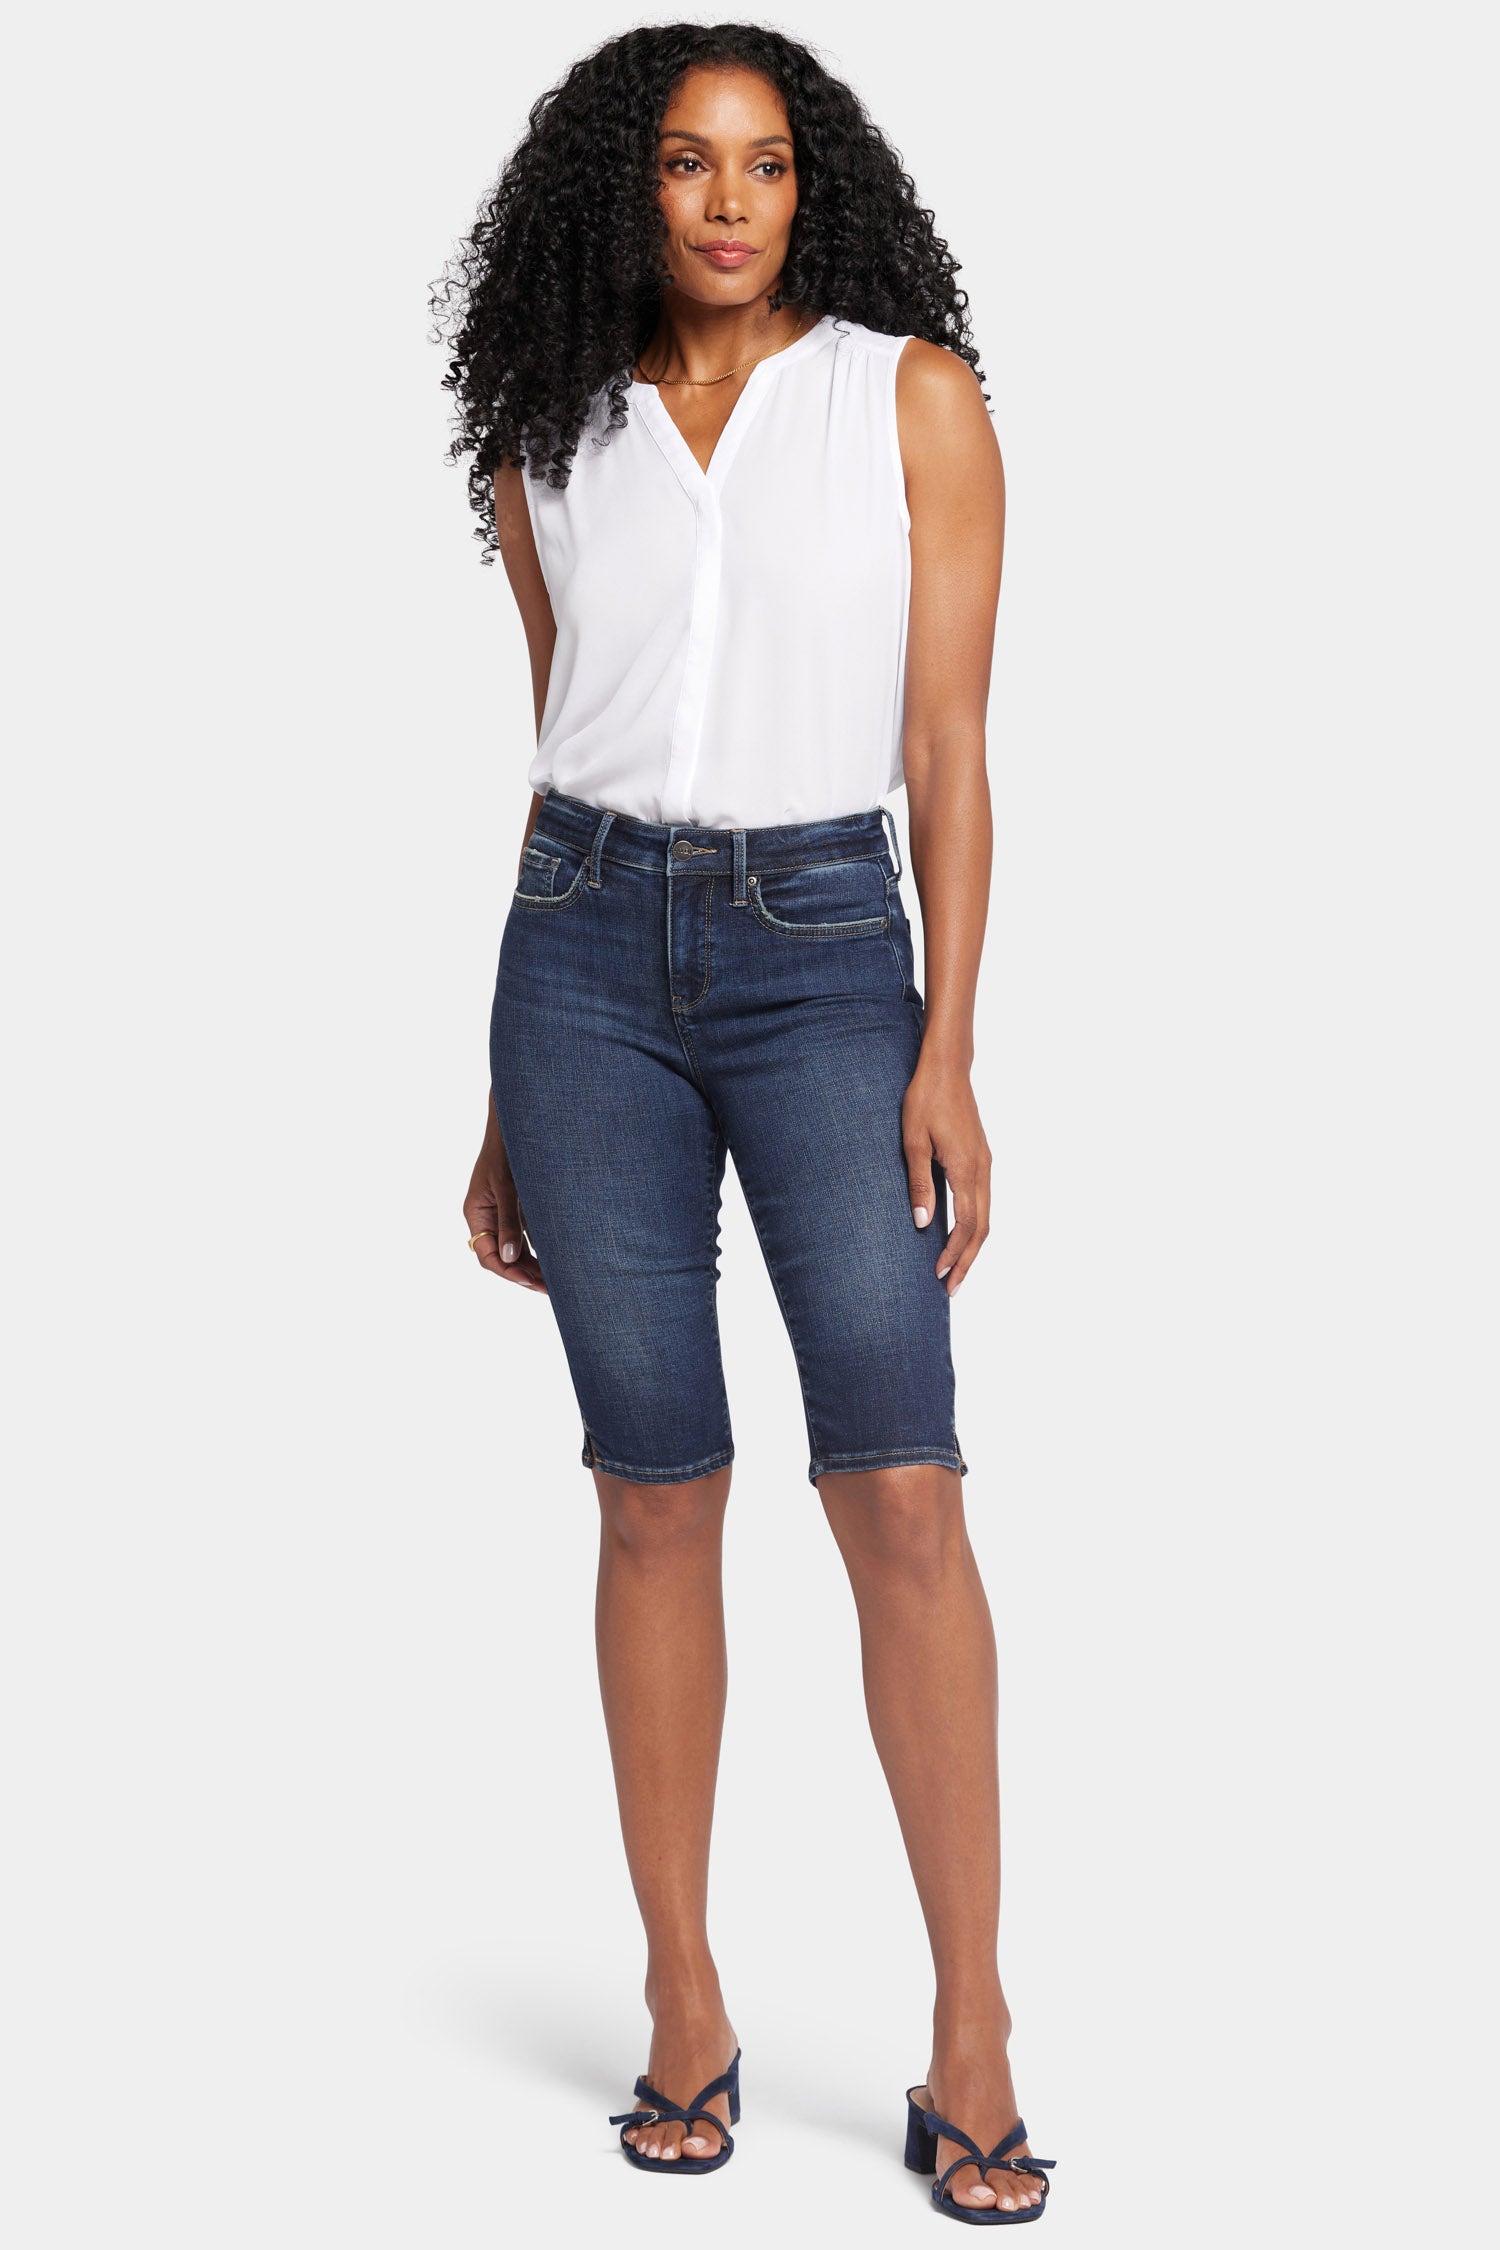 Buy Comfortable Plus Size Black Flare Jeans Online | Amydus